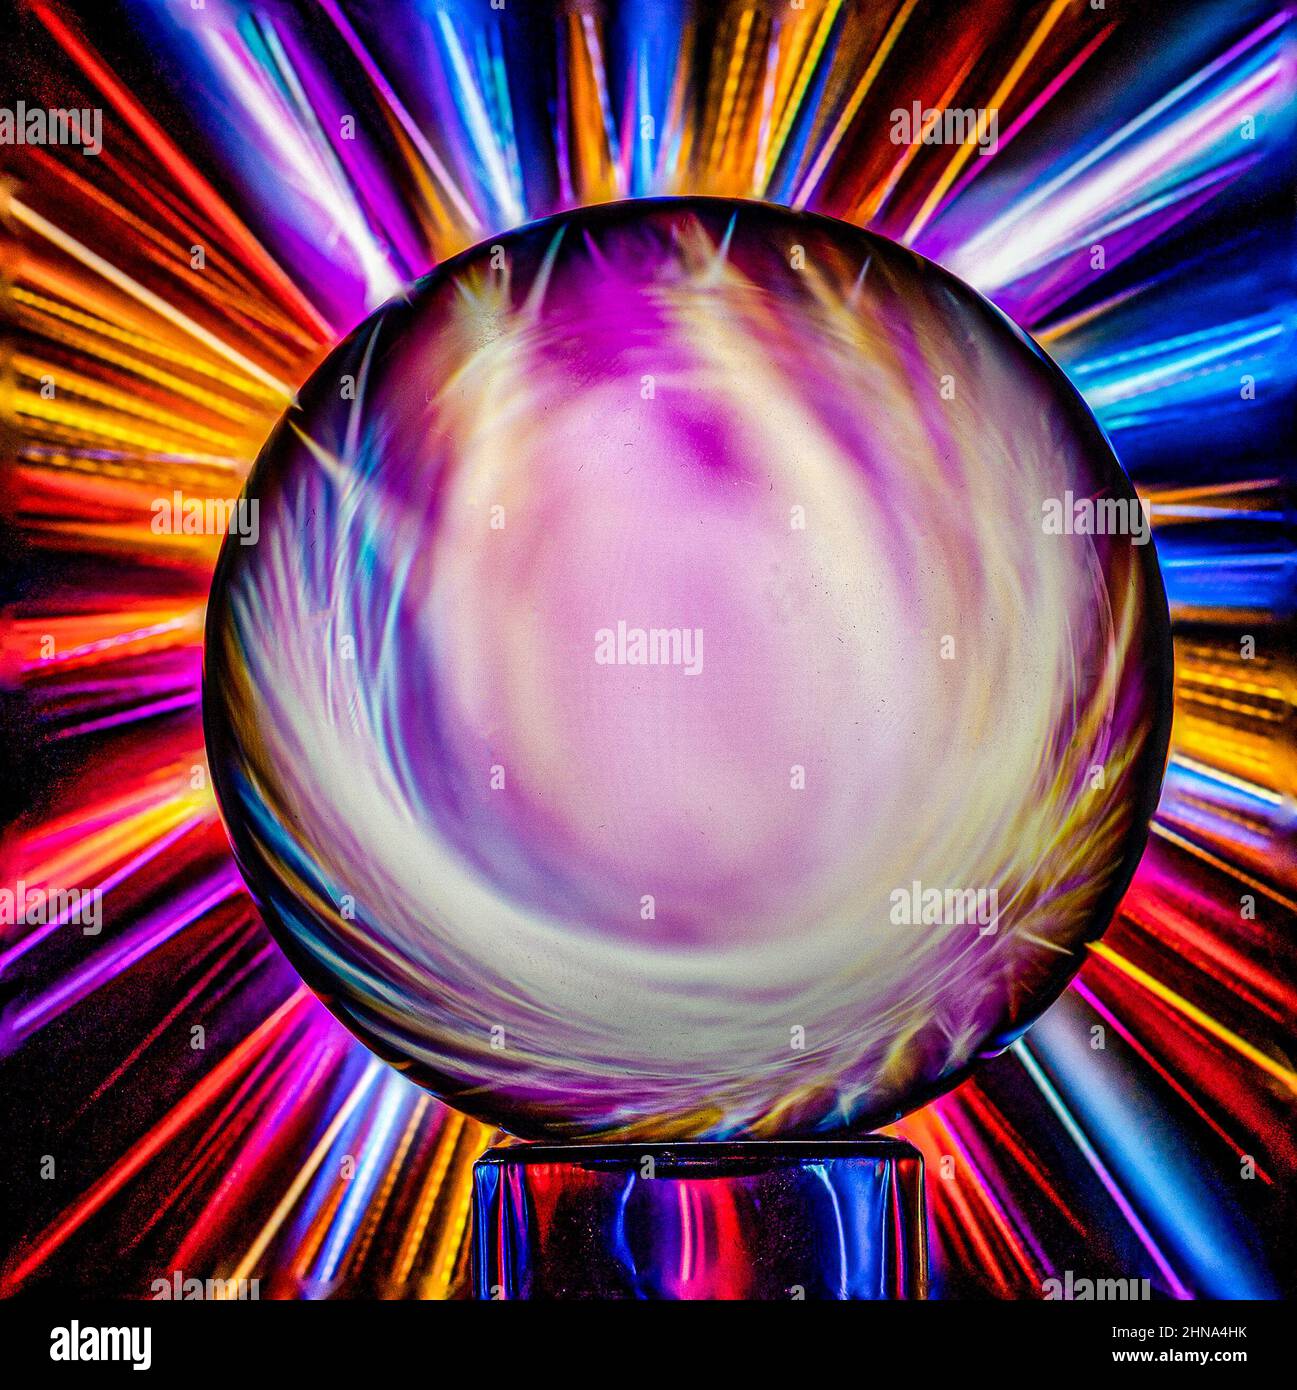 Image abstraite d'une boule de cristal devant un patter géométrique multicolore en rafale.multicolore, dynamique. Couleurs explosives. Banque D'Images